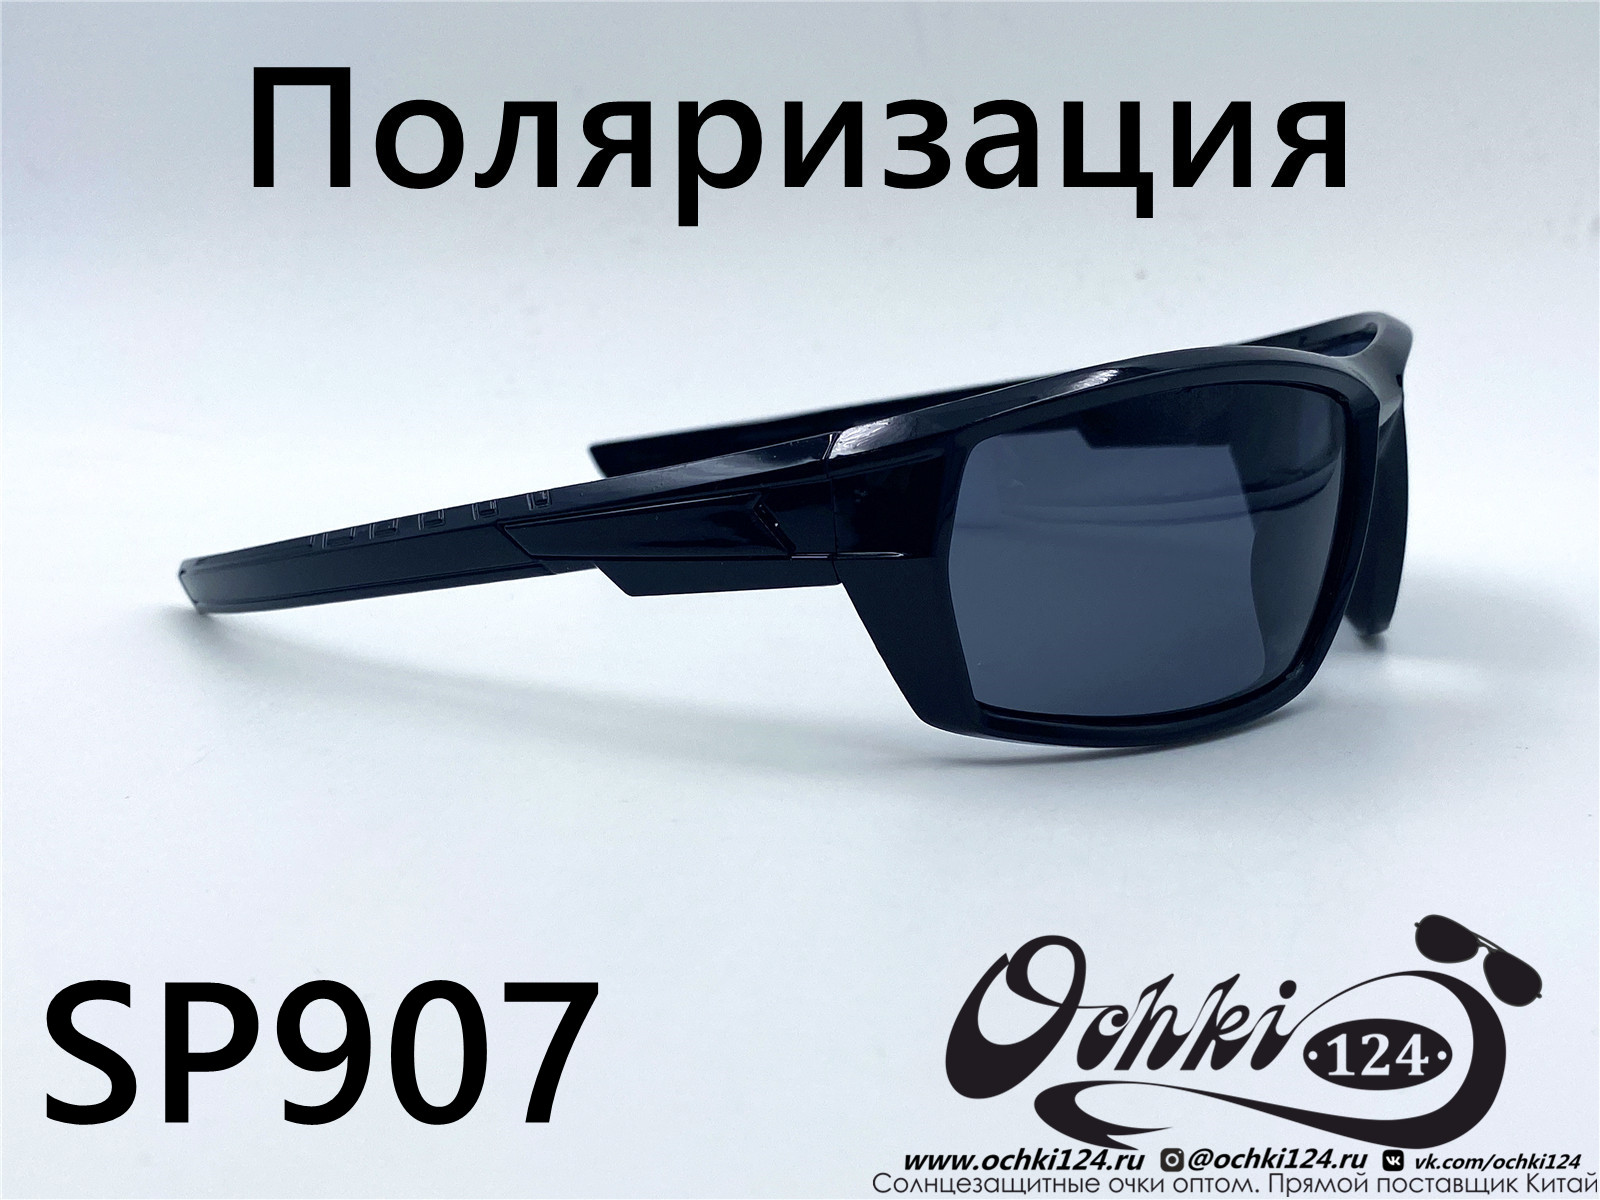  Солнцезащитные очки картинка 2022 Мужские Поляризованные Спорт Materice SP907-1 